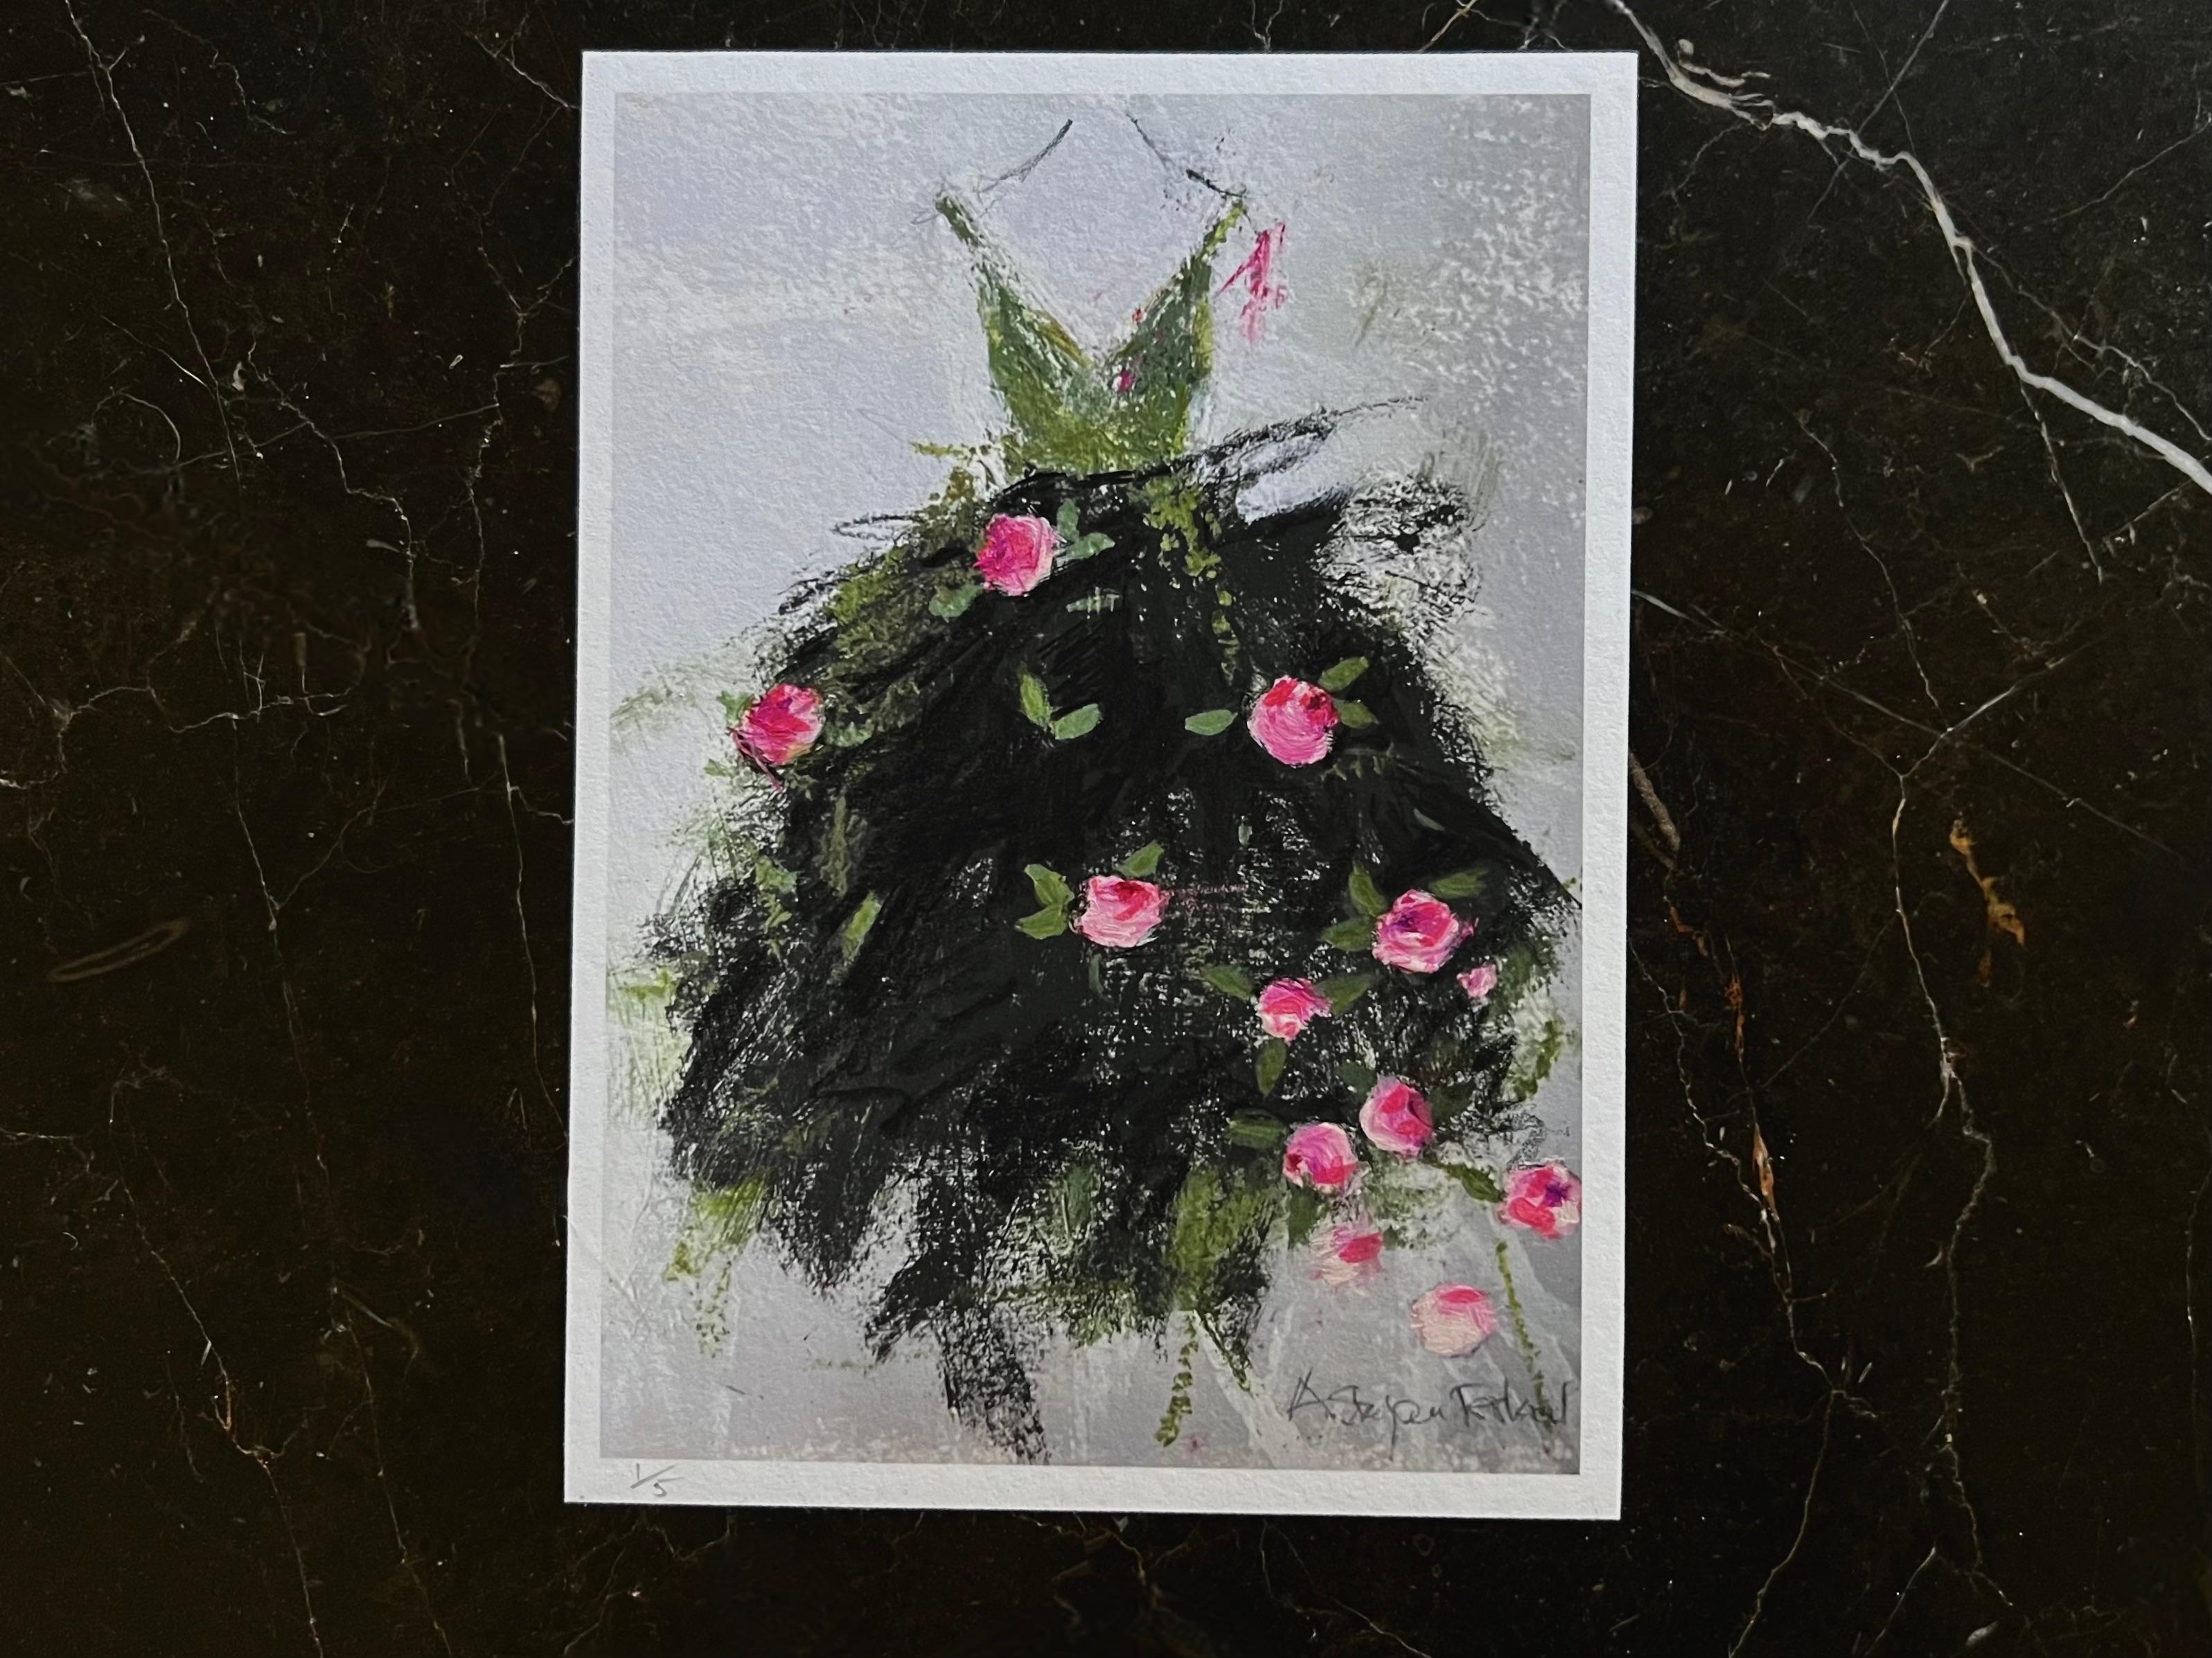 Figurative Print Andrea Stajan-Ferkul - The Garden Party - 5 "x7", impression giclée avec éléments peints à la main, vert, rose, noir